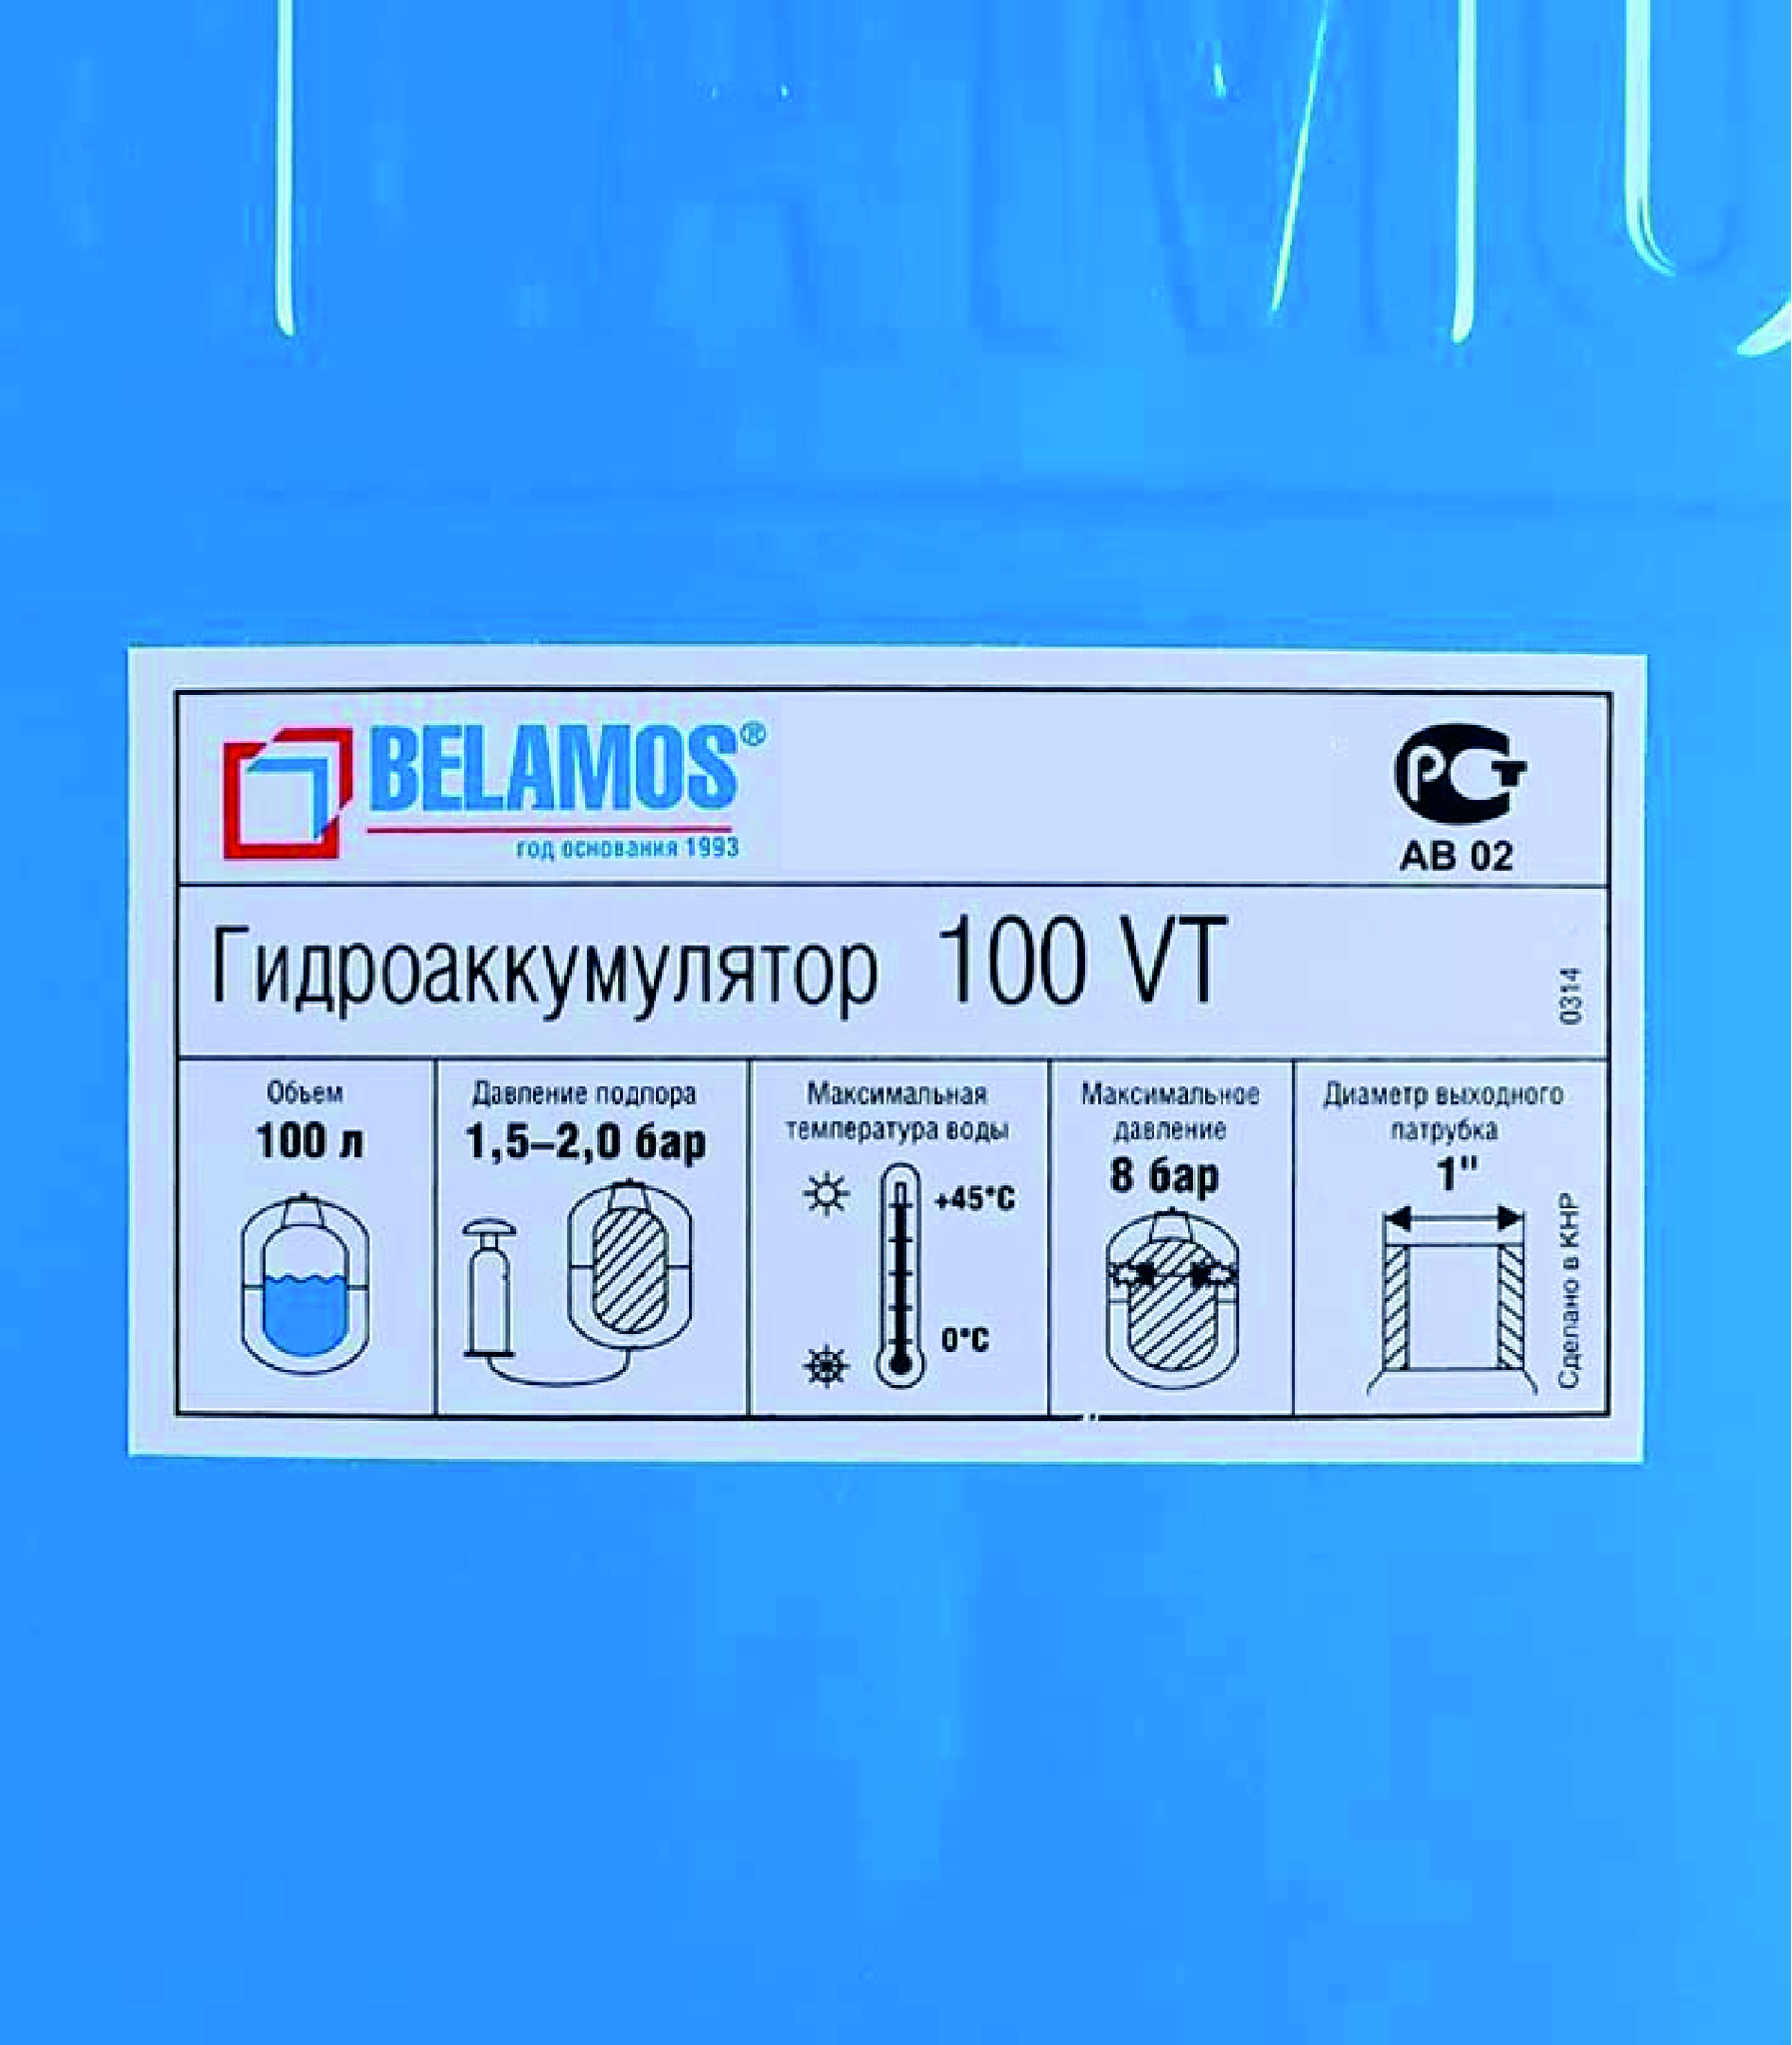 Гидроаккумулятор belamos 100vt